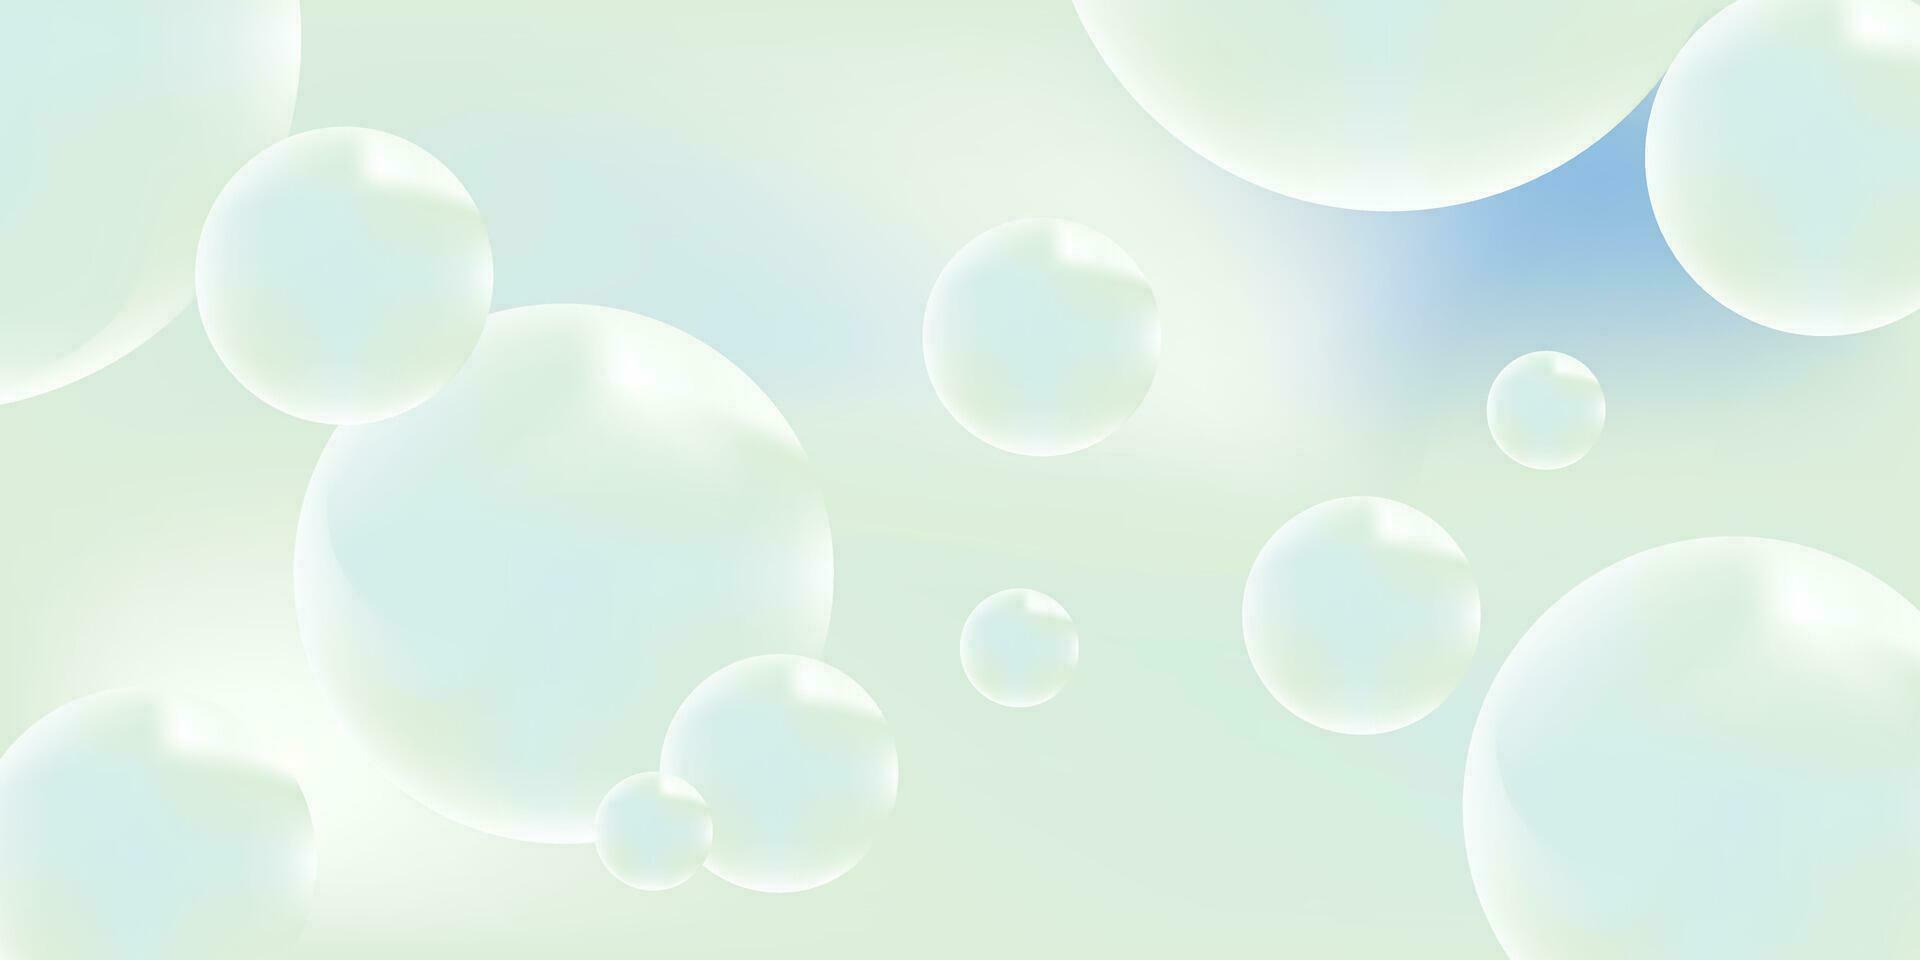 lutning bakgrund med turkos metaball former. morphing färgrik blobbar. vektor 3d illustration. abstrakt 3d bakgrund. flytande färger. baner eller tecken design